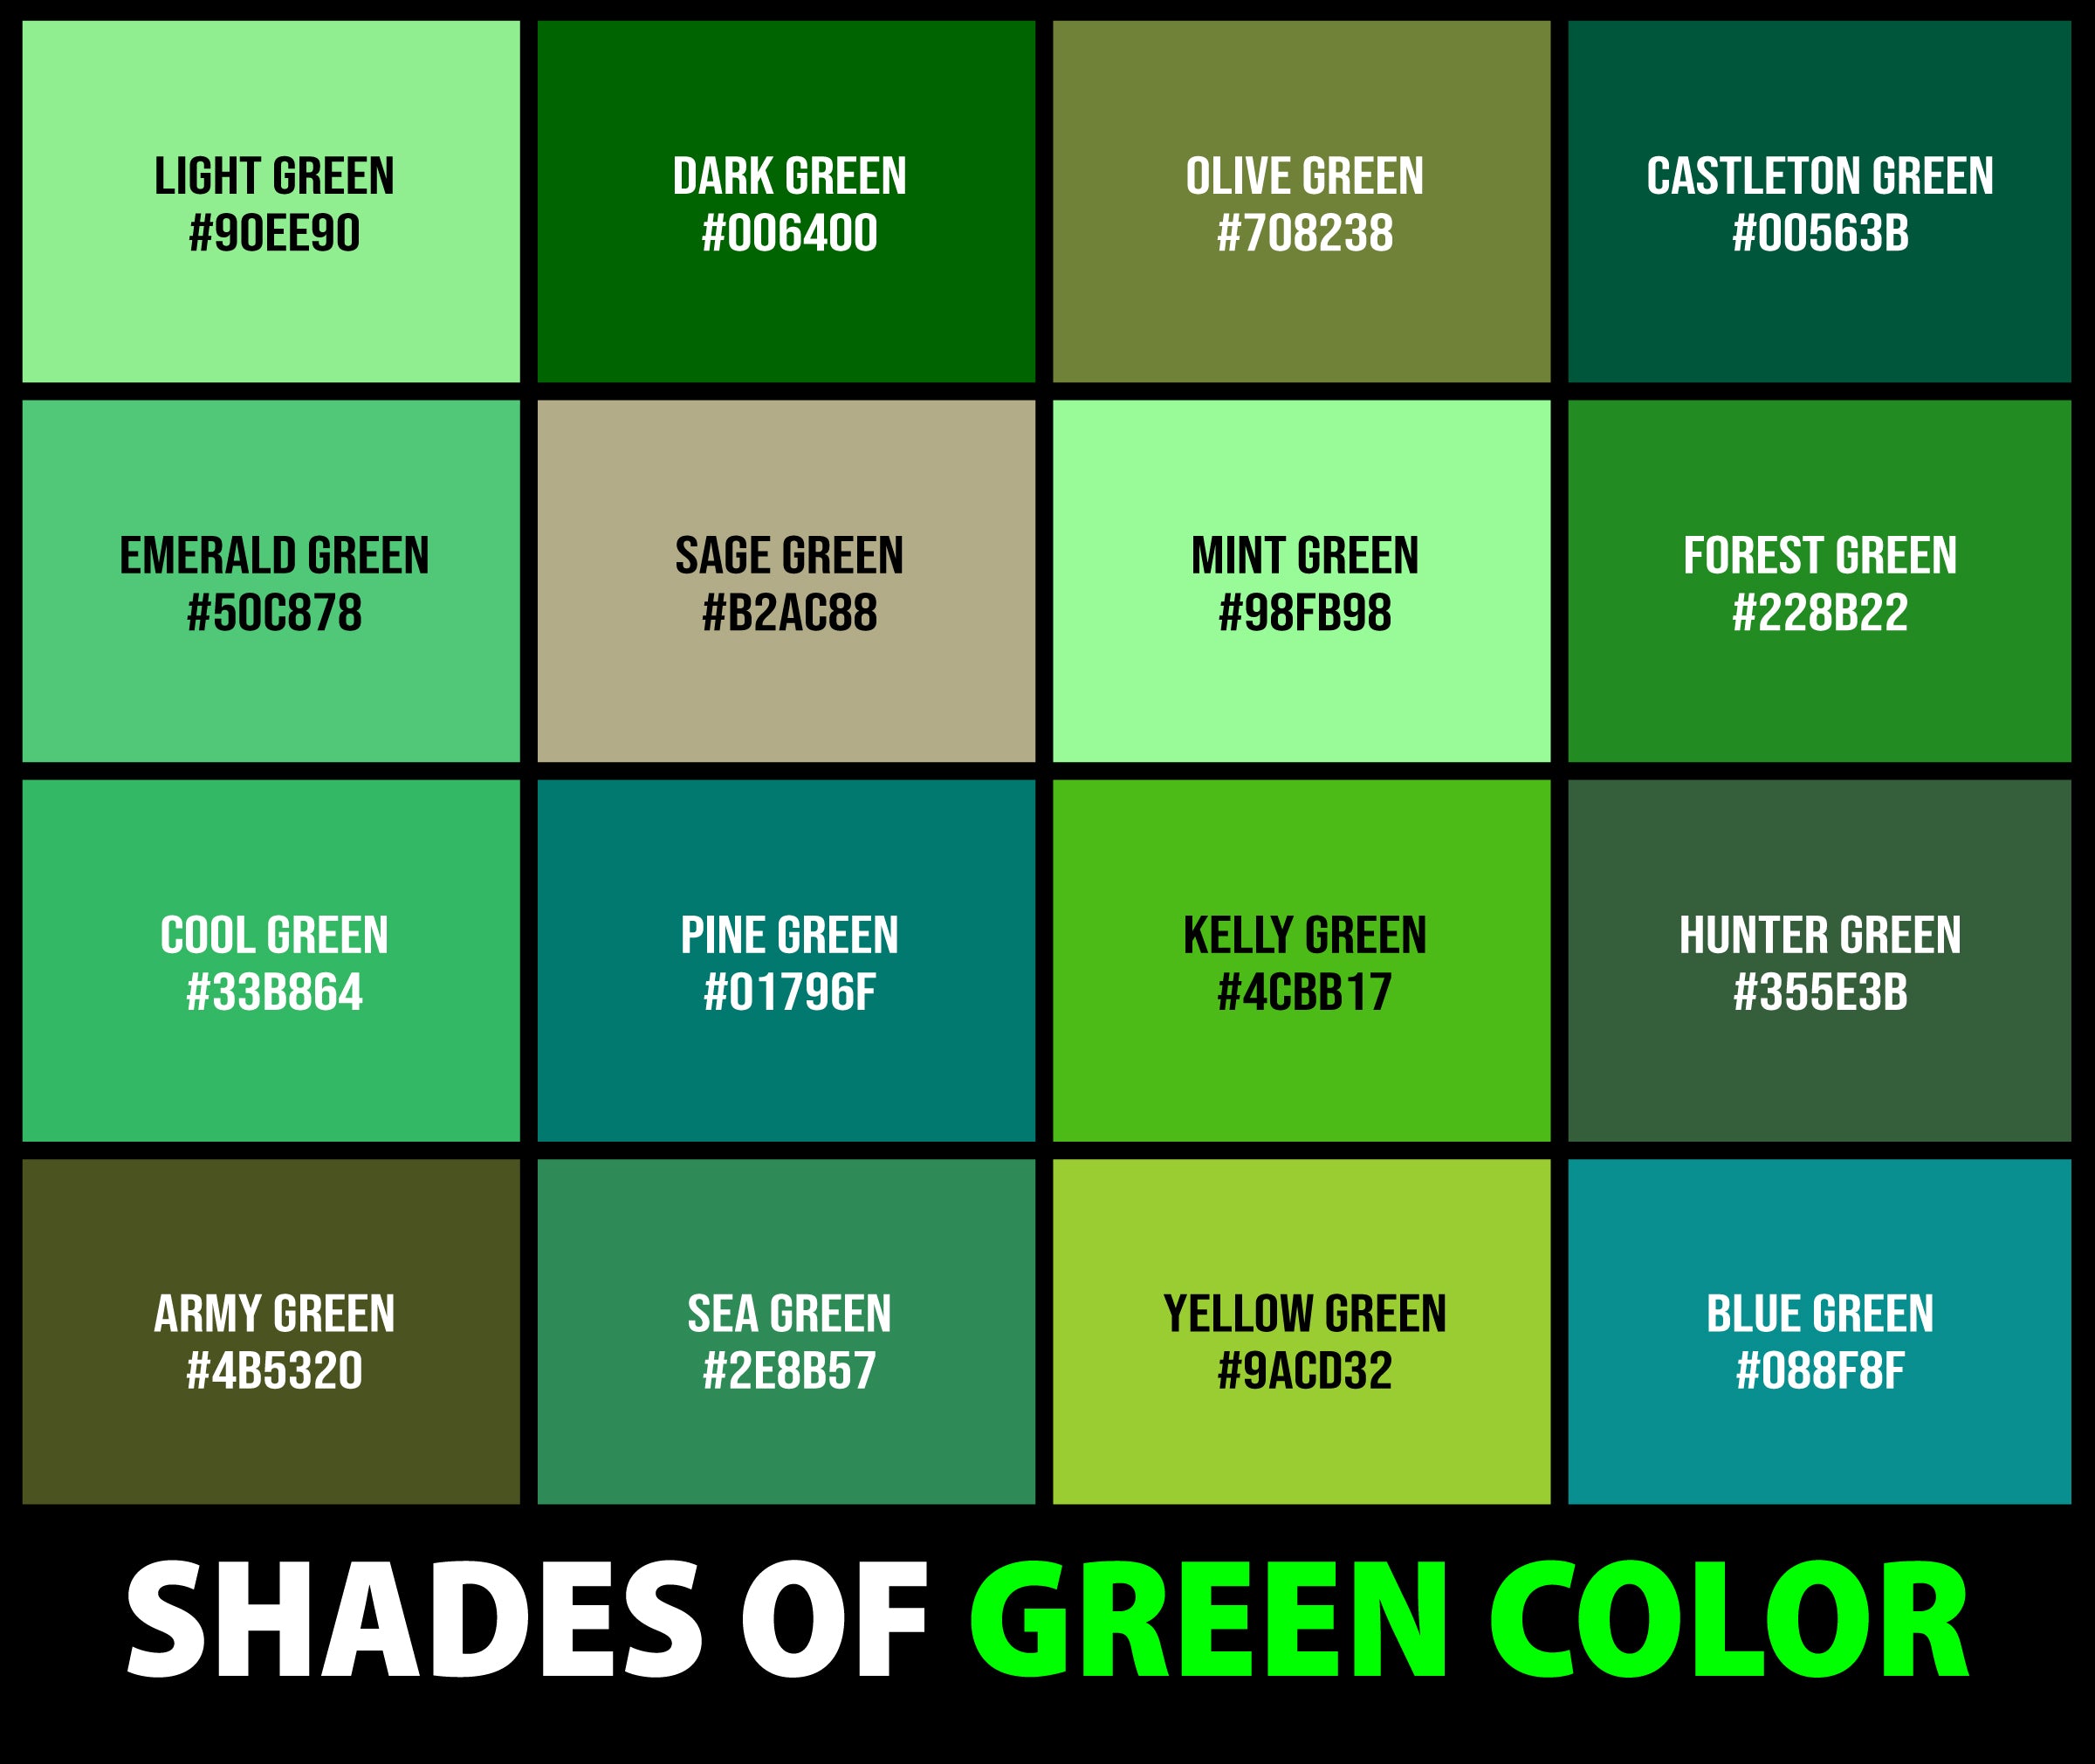 shades of green names